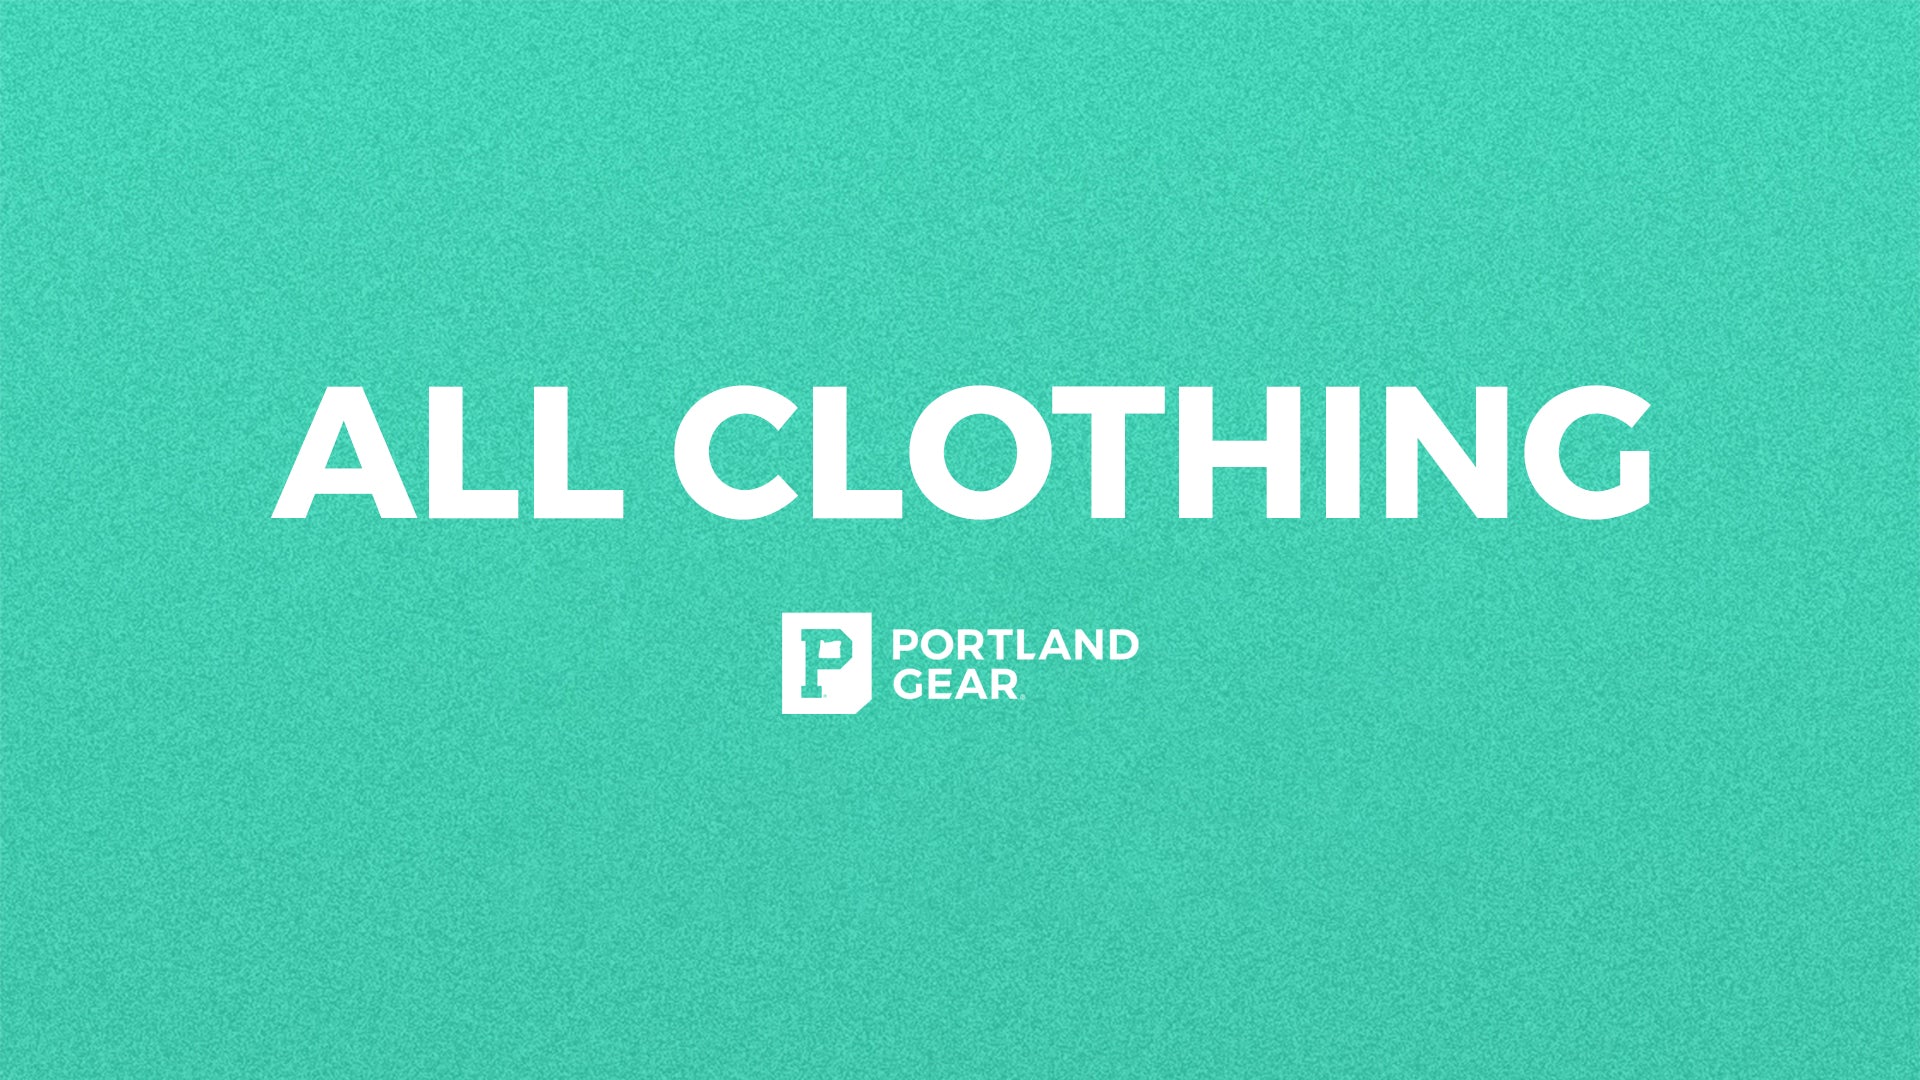 All Clothing - Portland Gear